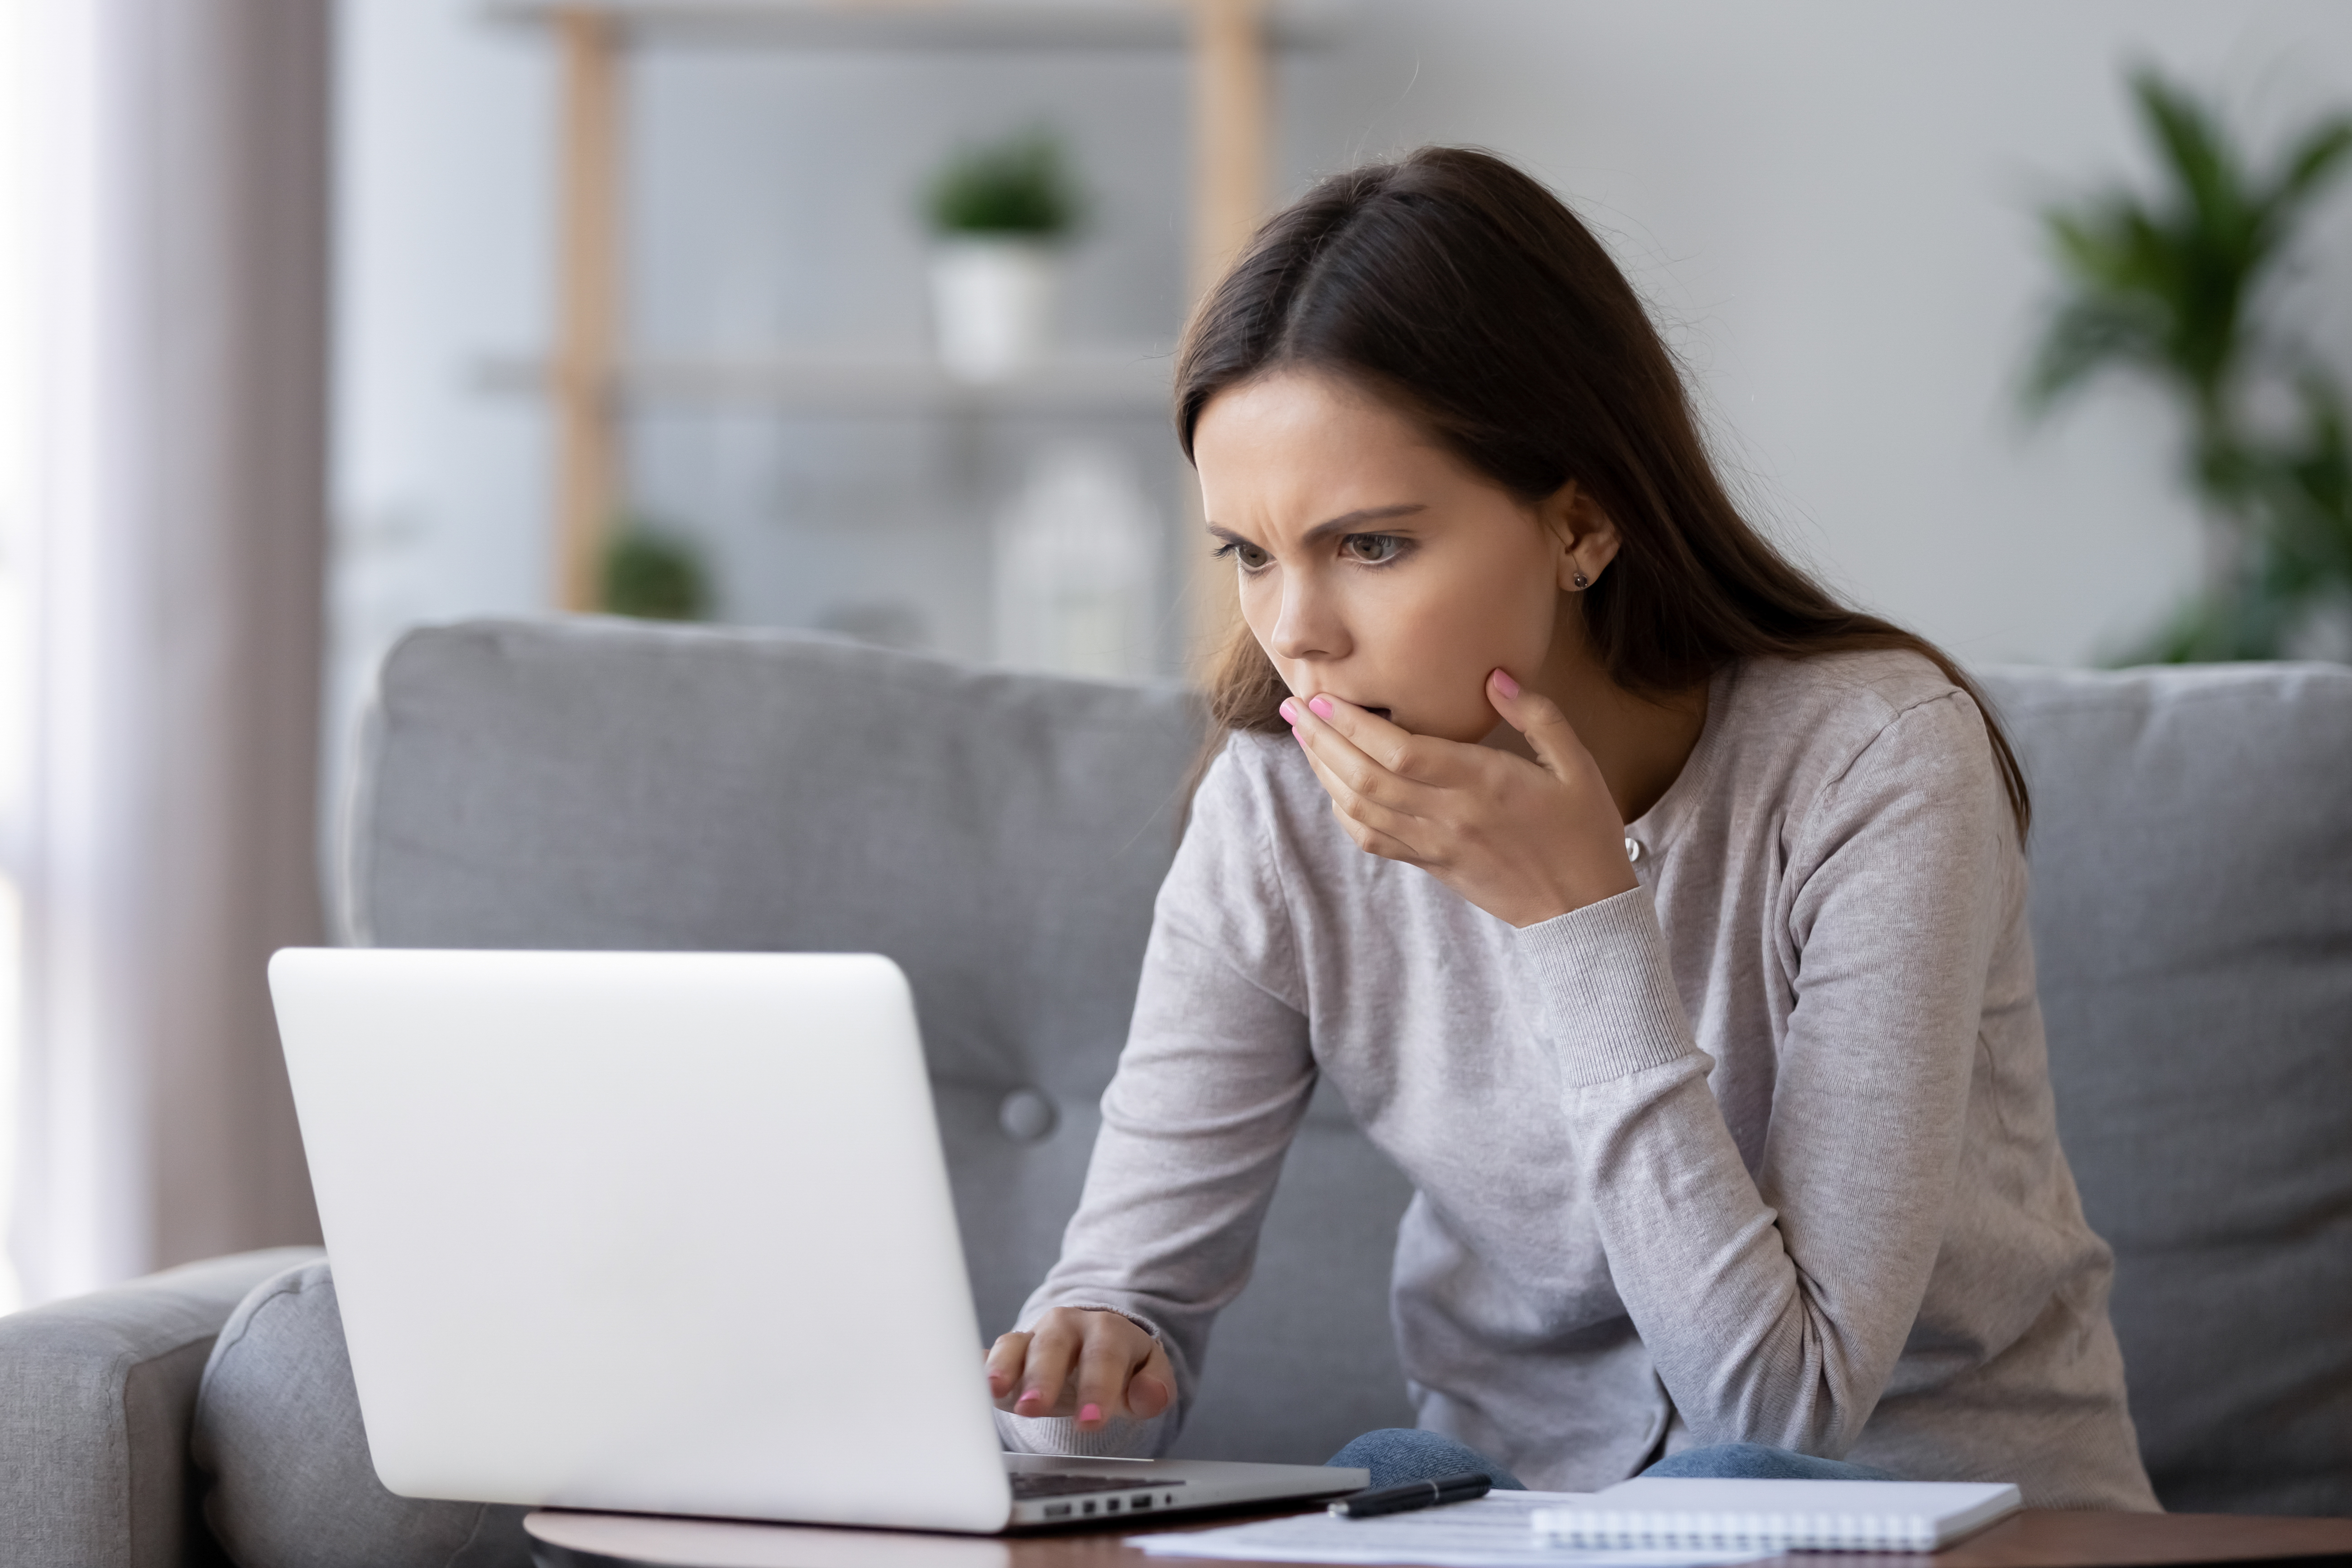 Eine Frau ist schockiert, nachdem sie etwas auf ihrem Laptop gesehen hat | Quelle: Shutterstock